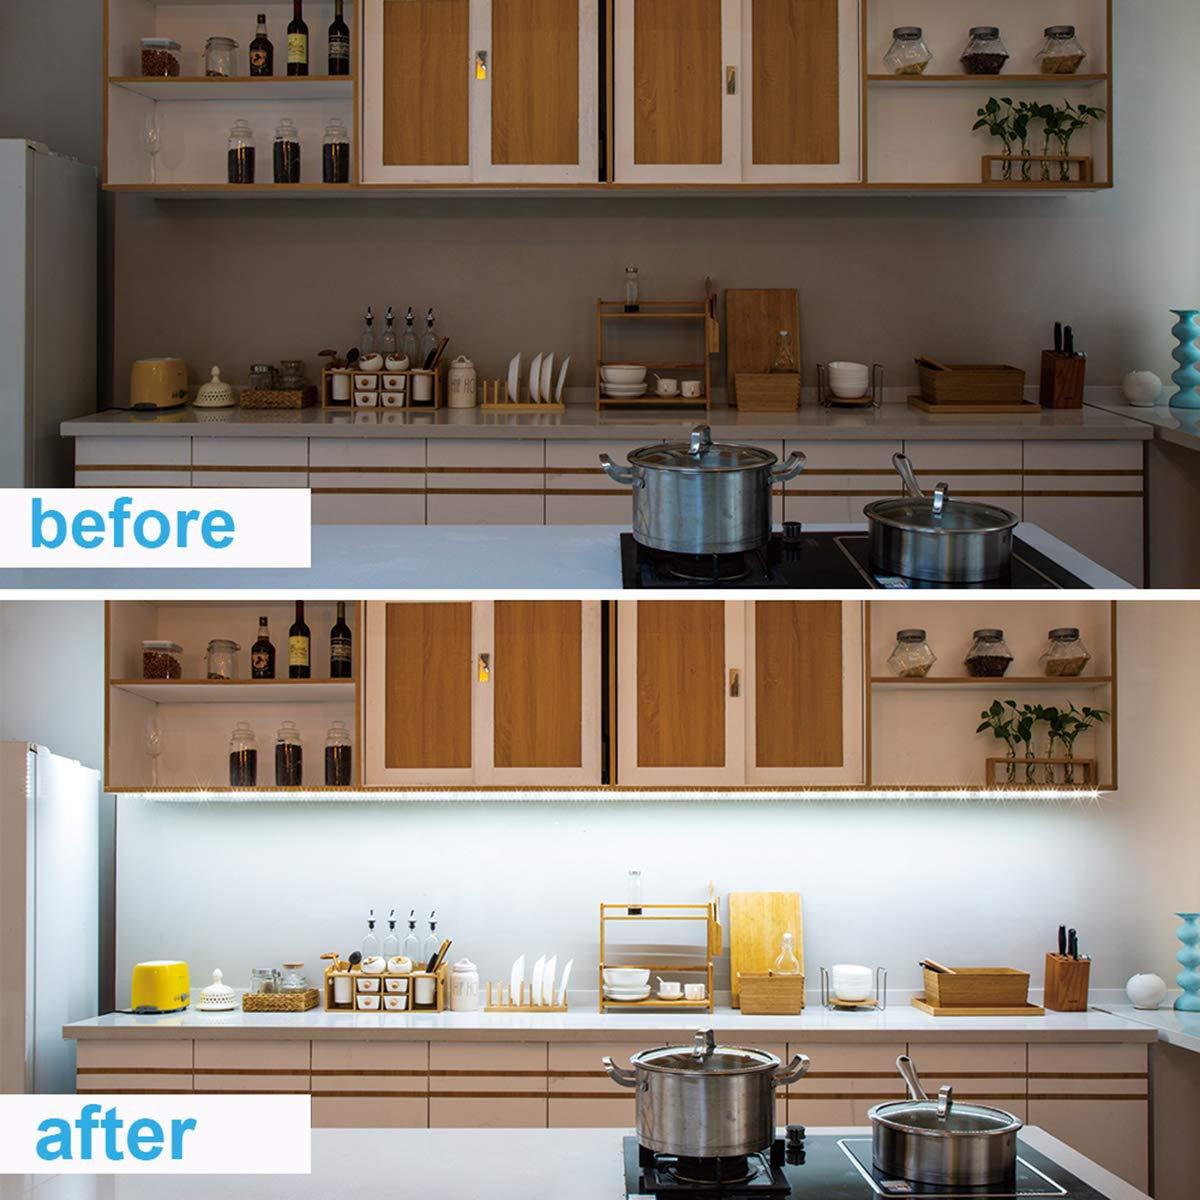 Details about   16FT LED Strip Light Under Cabinet Lighting Kit Kitchen Shelf Counte 